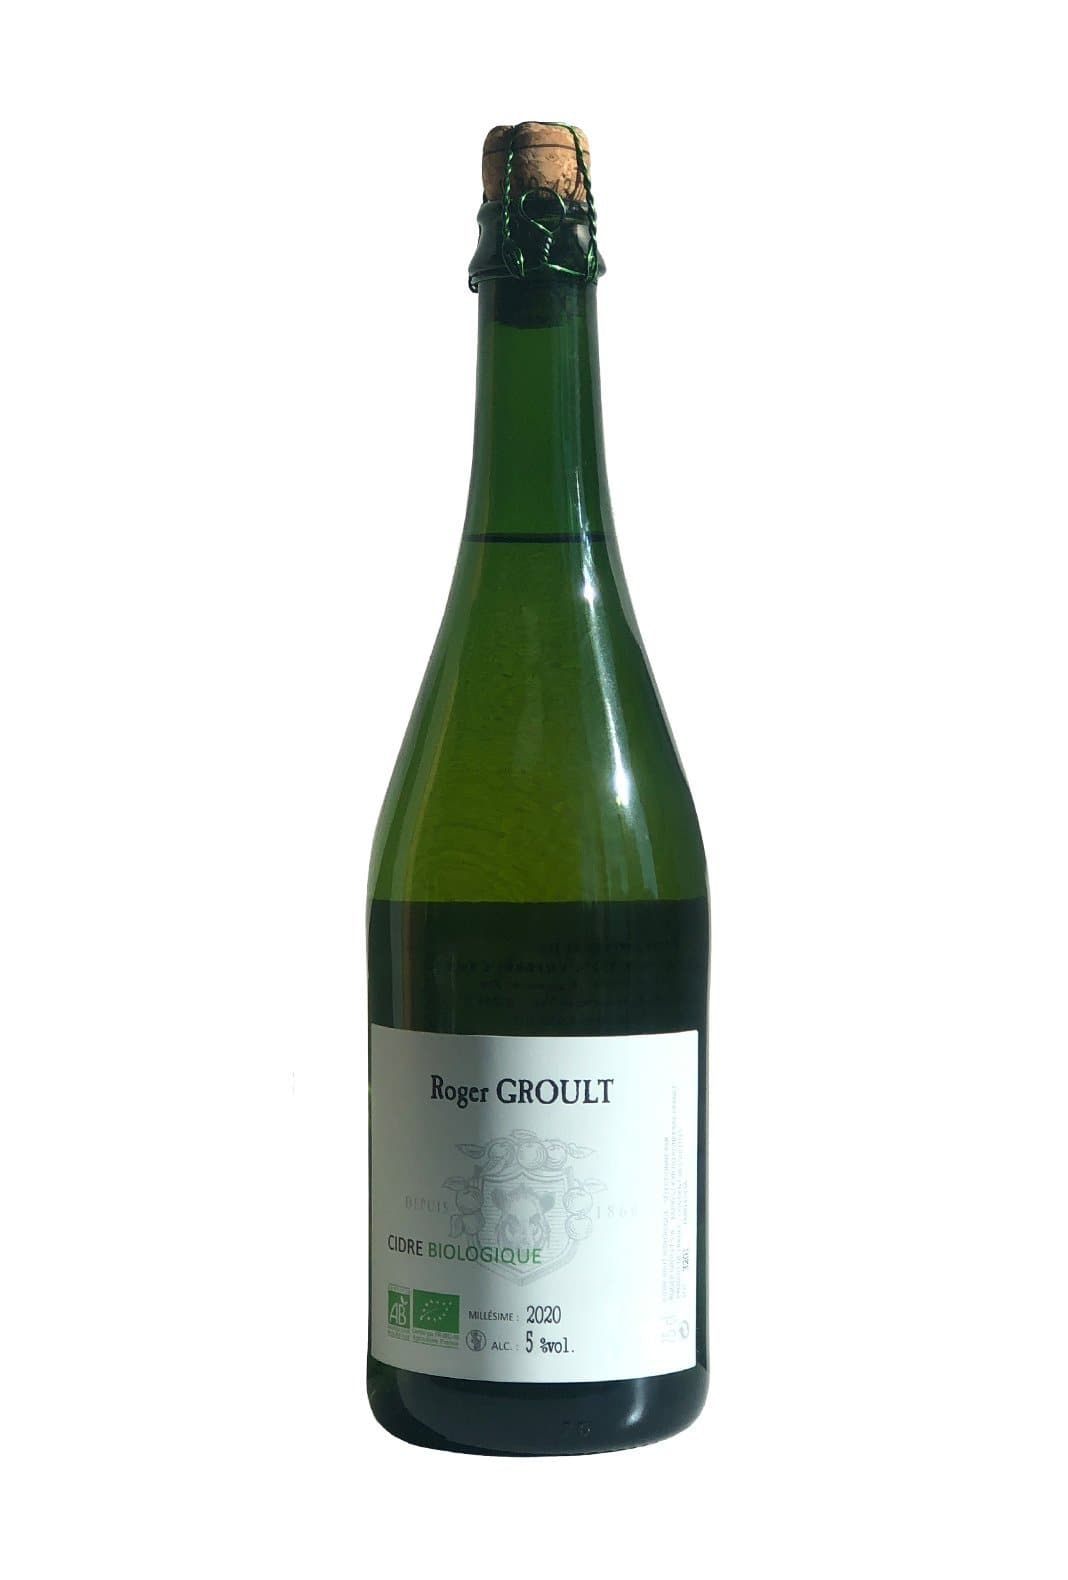 Roger Groult Organic Apple Cider Pays D'Auge 5% 750ml | Brandy | Shop online at Spirits of France